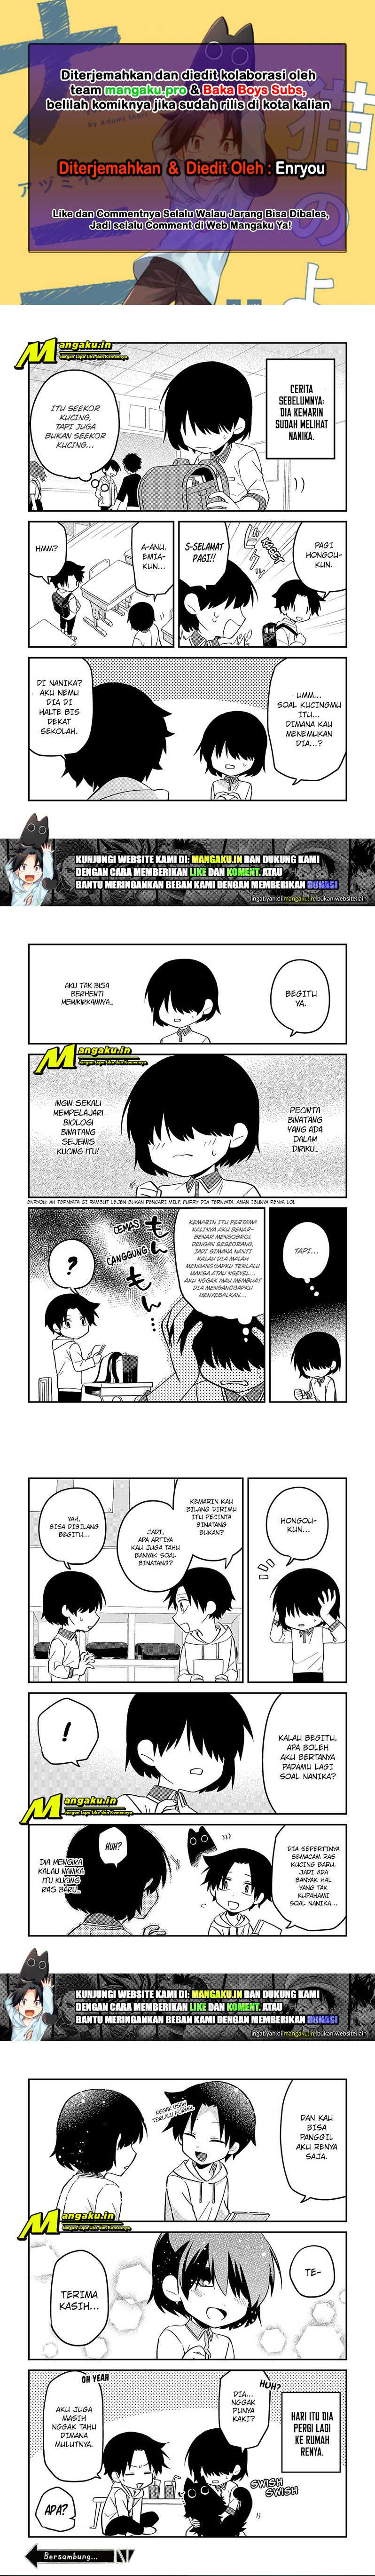 Neko no Youna Nanika: Chapter 23 - Page 1